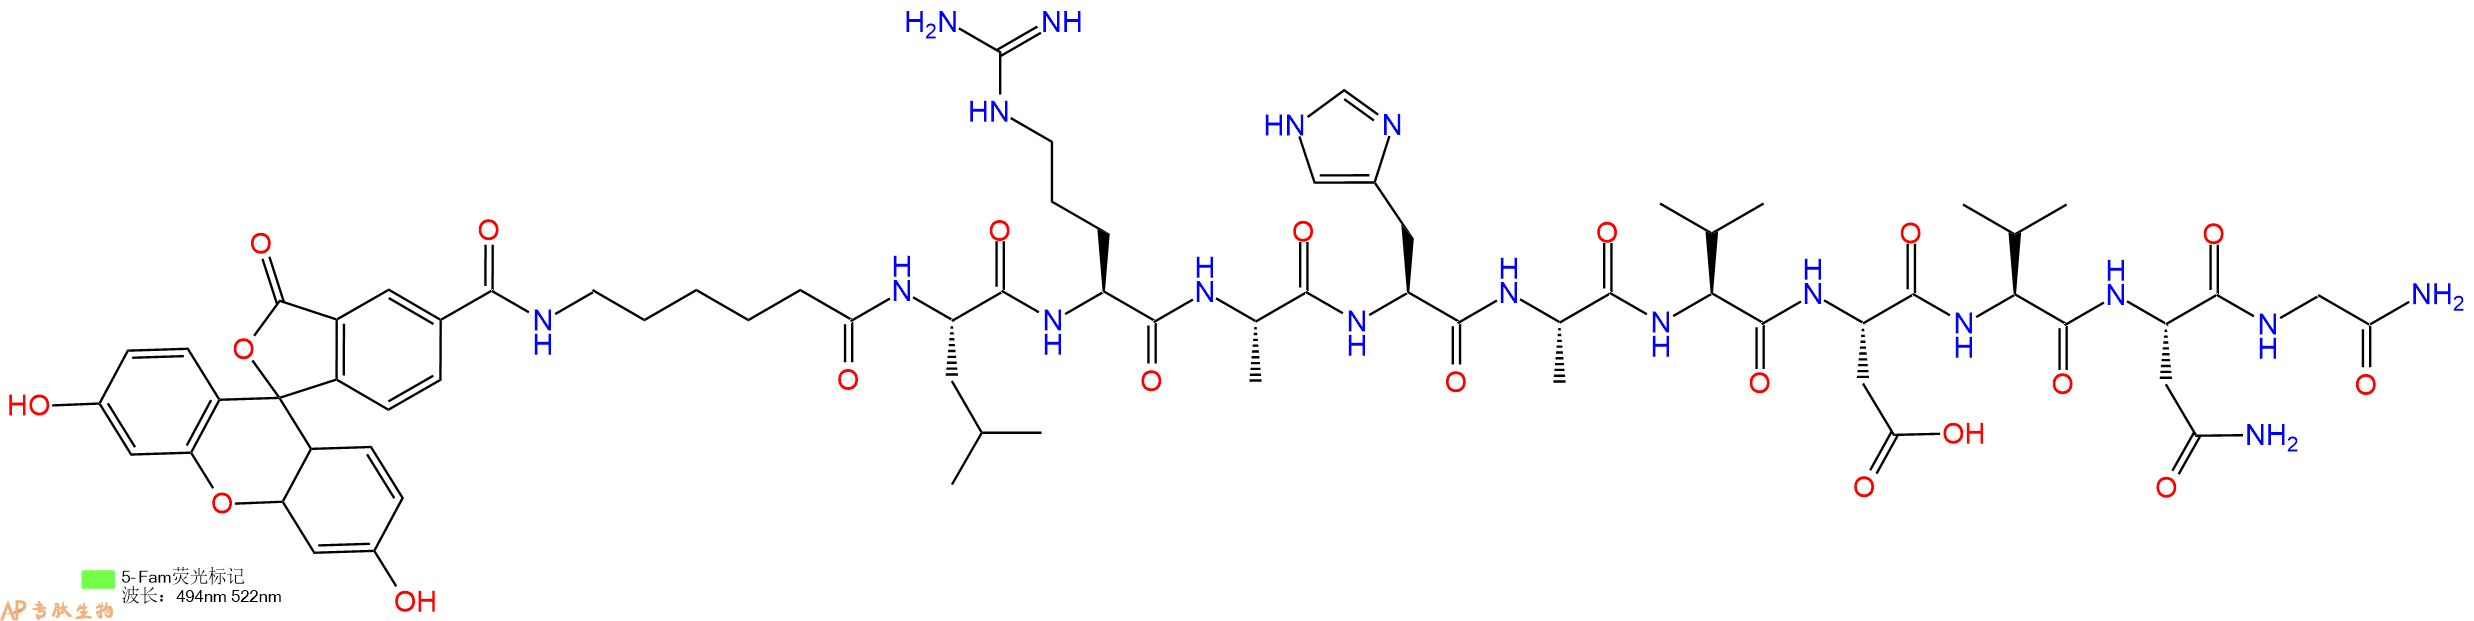 专肽生物产品5FAM-Ahx-Leu-Arg-Ala-His-Ala-Val-Asp-Val-Asn-Gly-N